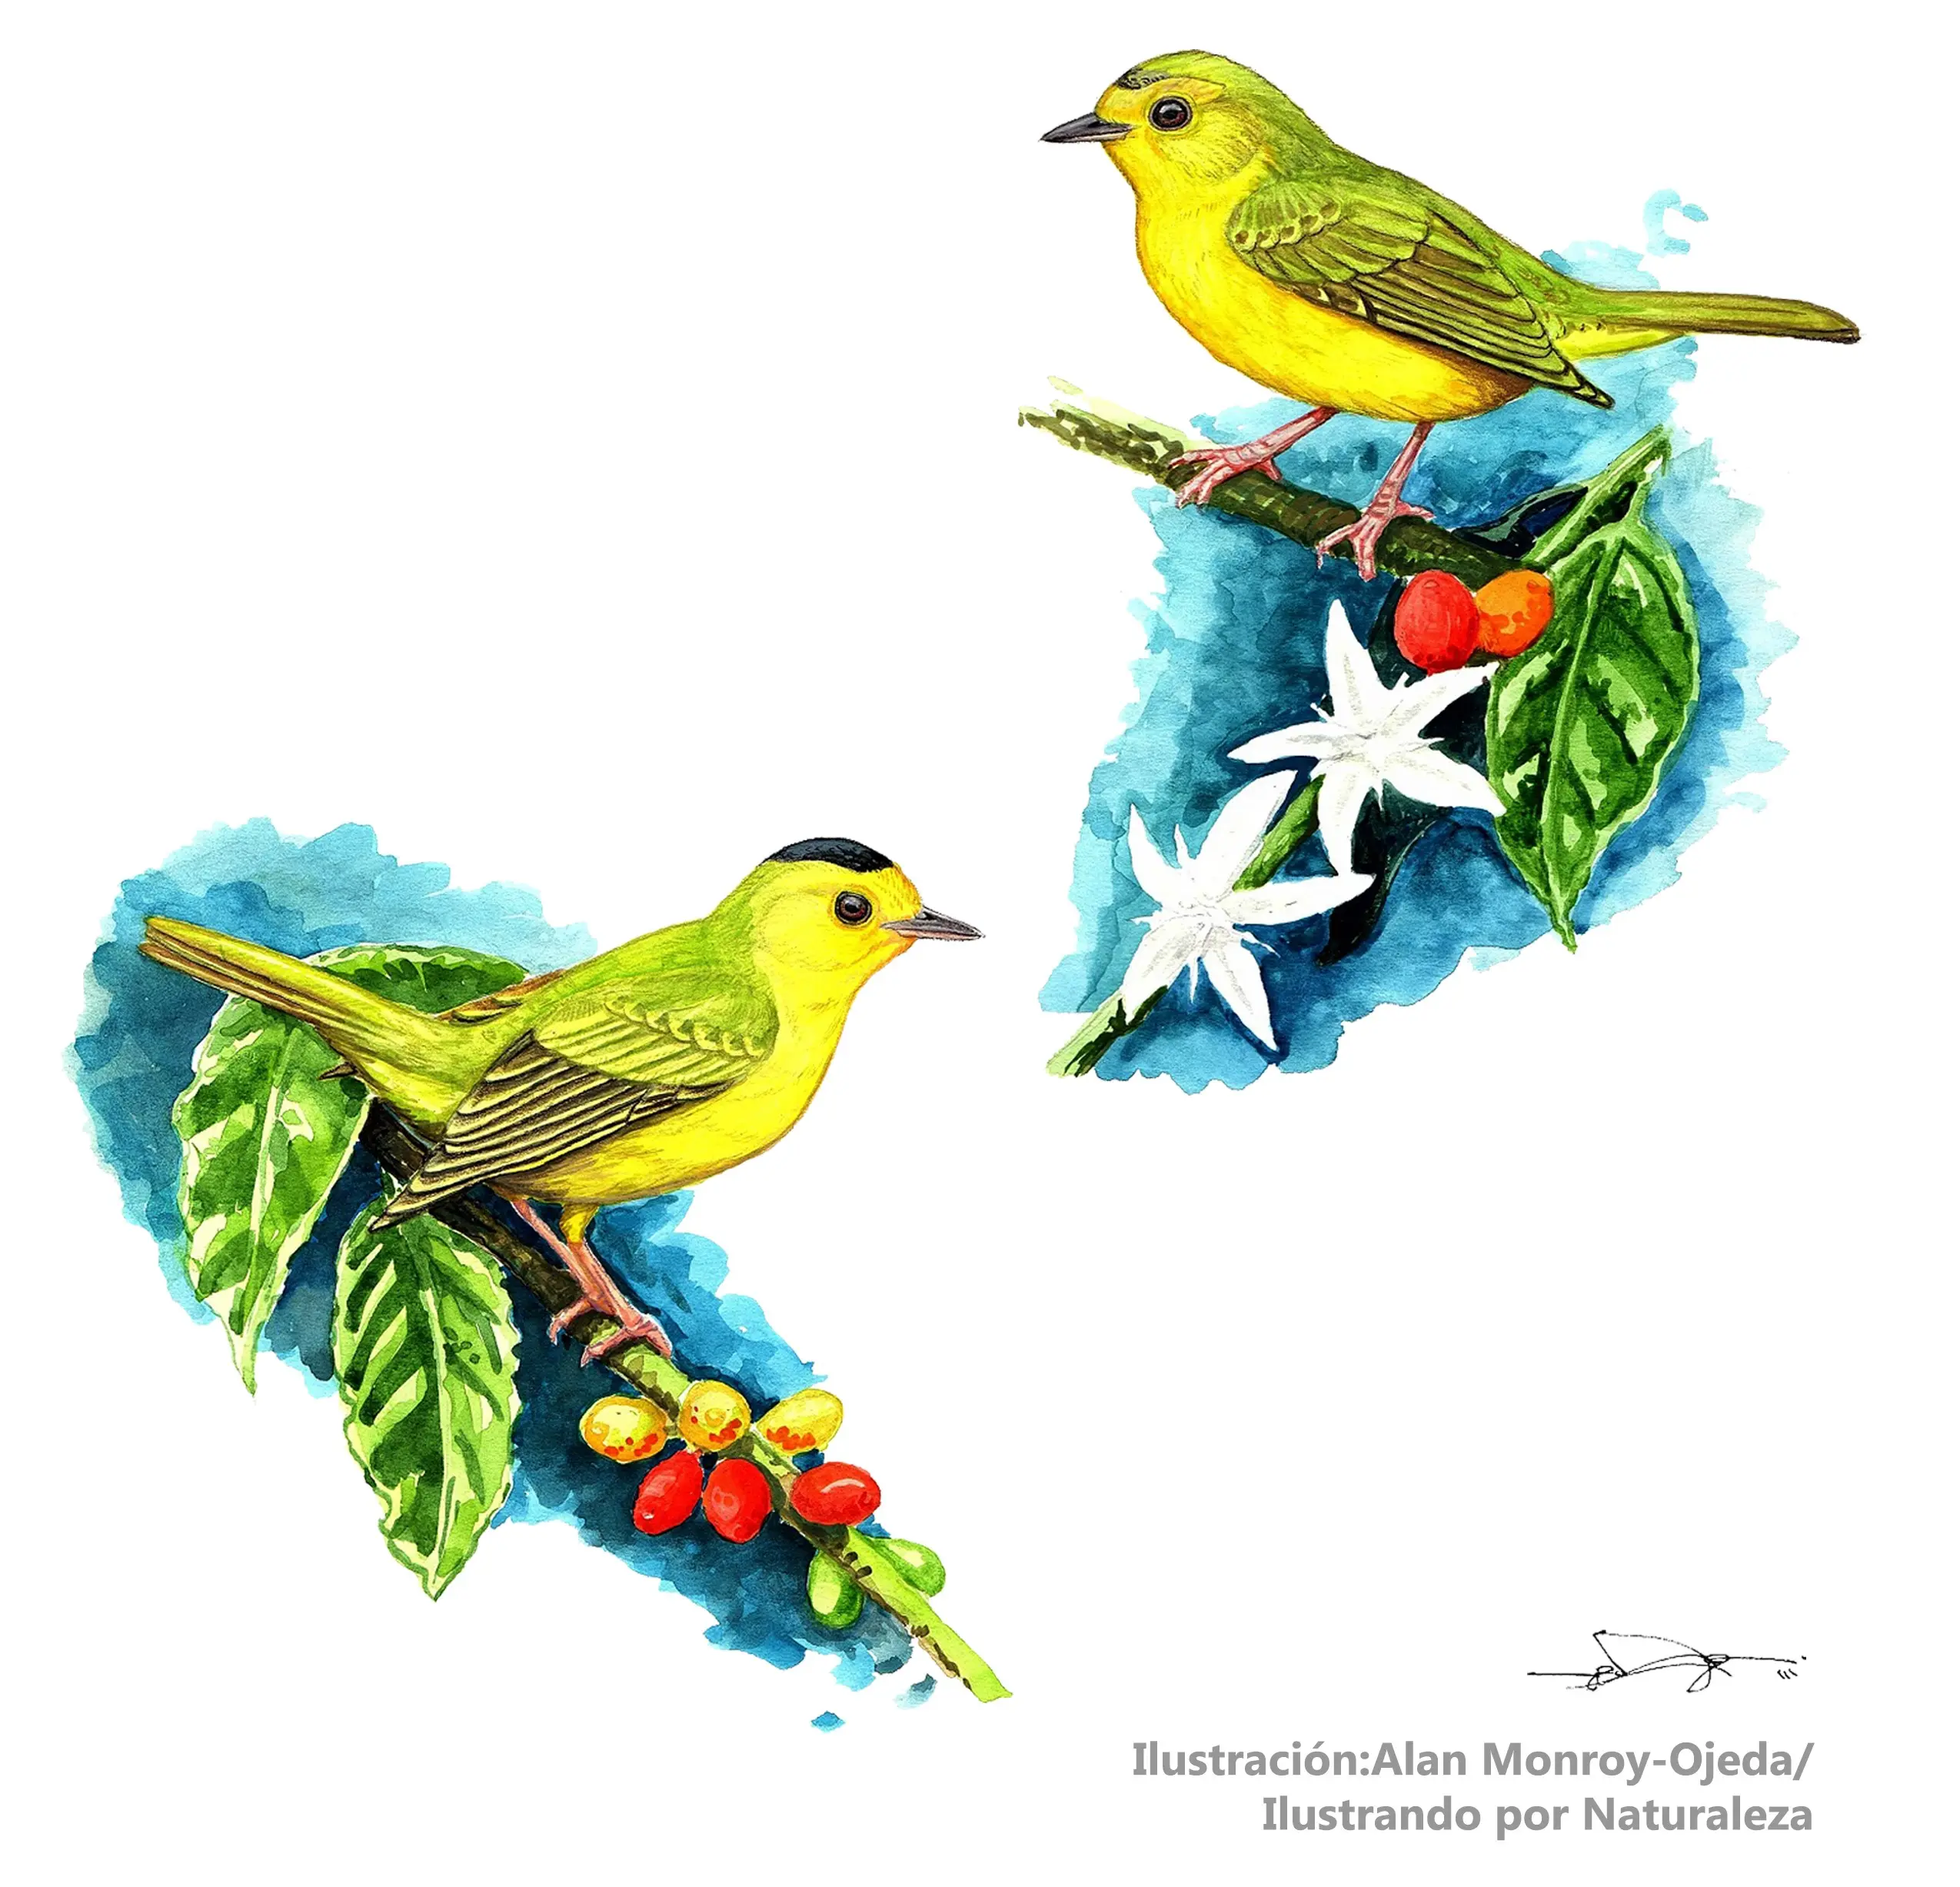 acciones de las aves frente a un estimulo - Cómo responden los organismos a los estímulos del ambiente